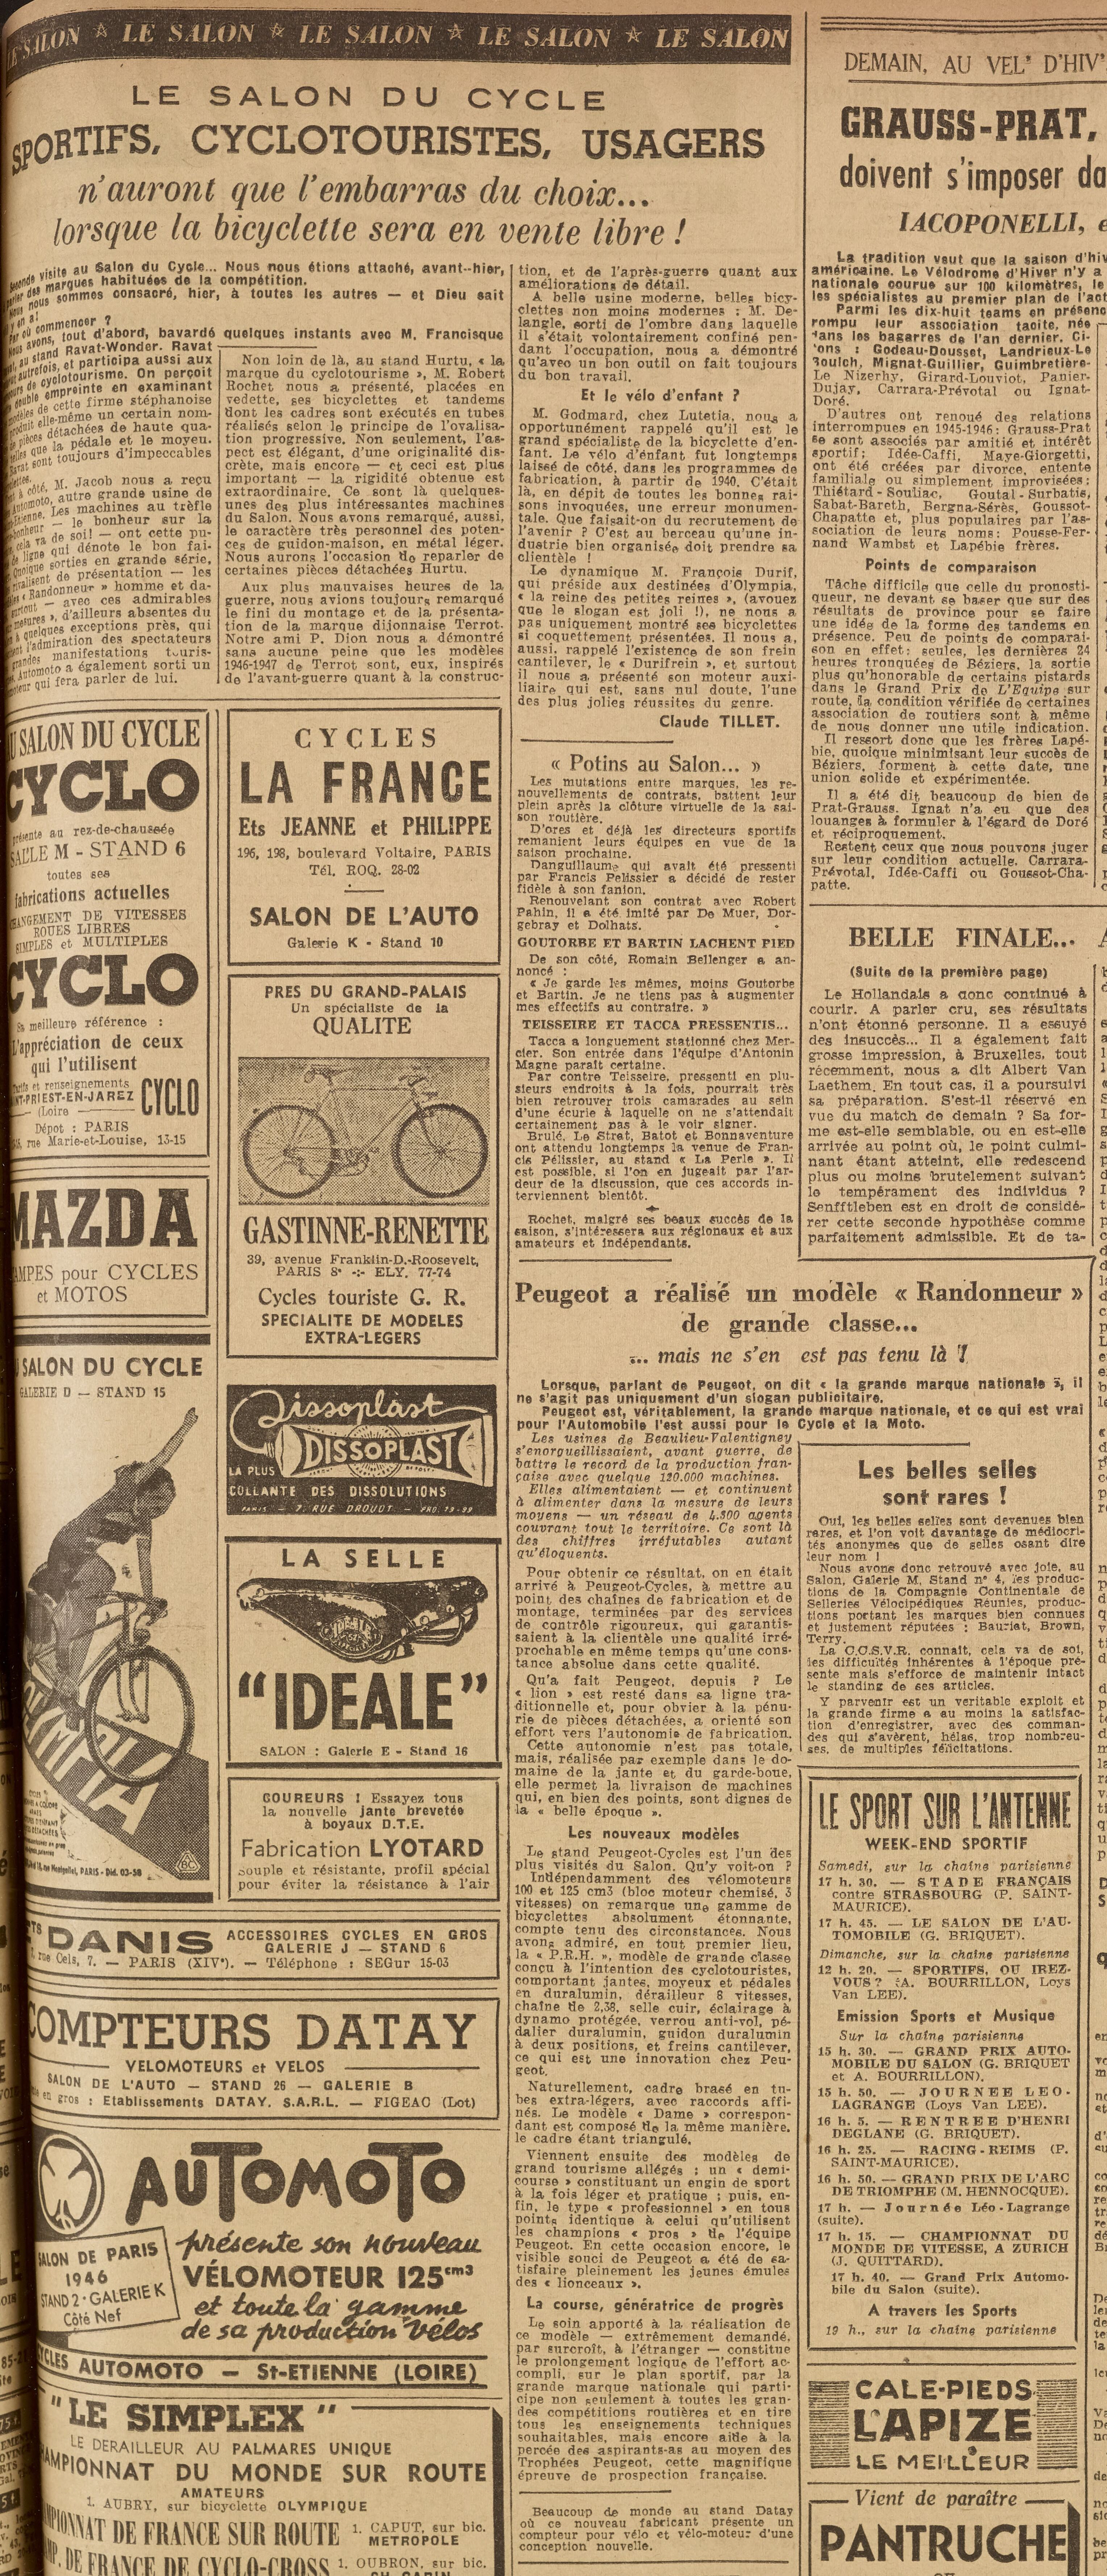 Salon du Cycle octobre 1946, Paris, le Grand Palais - L'Equipe - Cyclo Magazine 230214050433721918111989